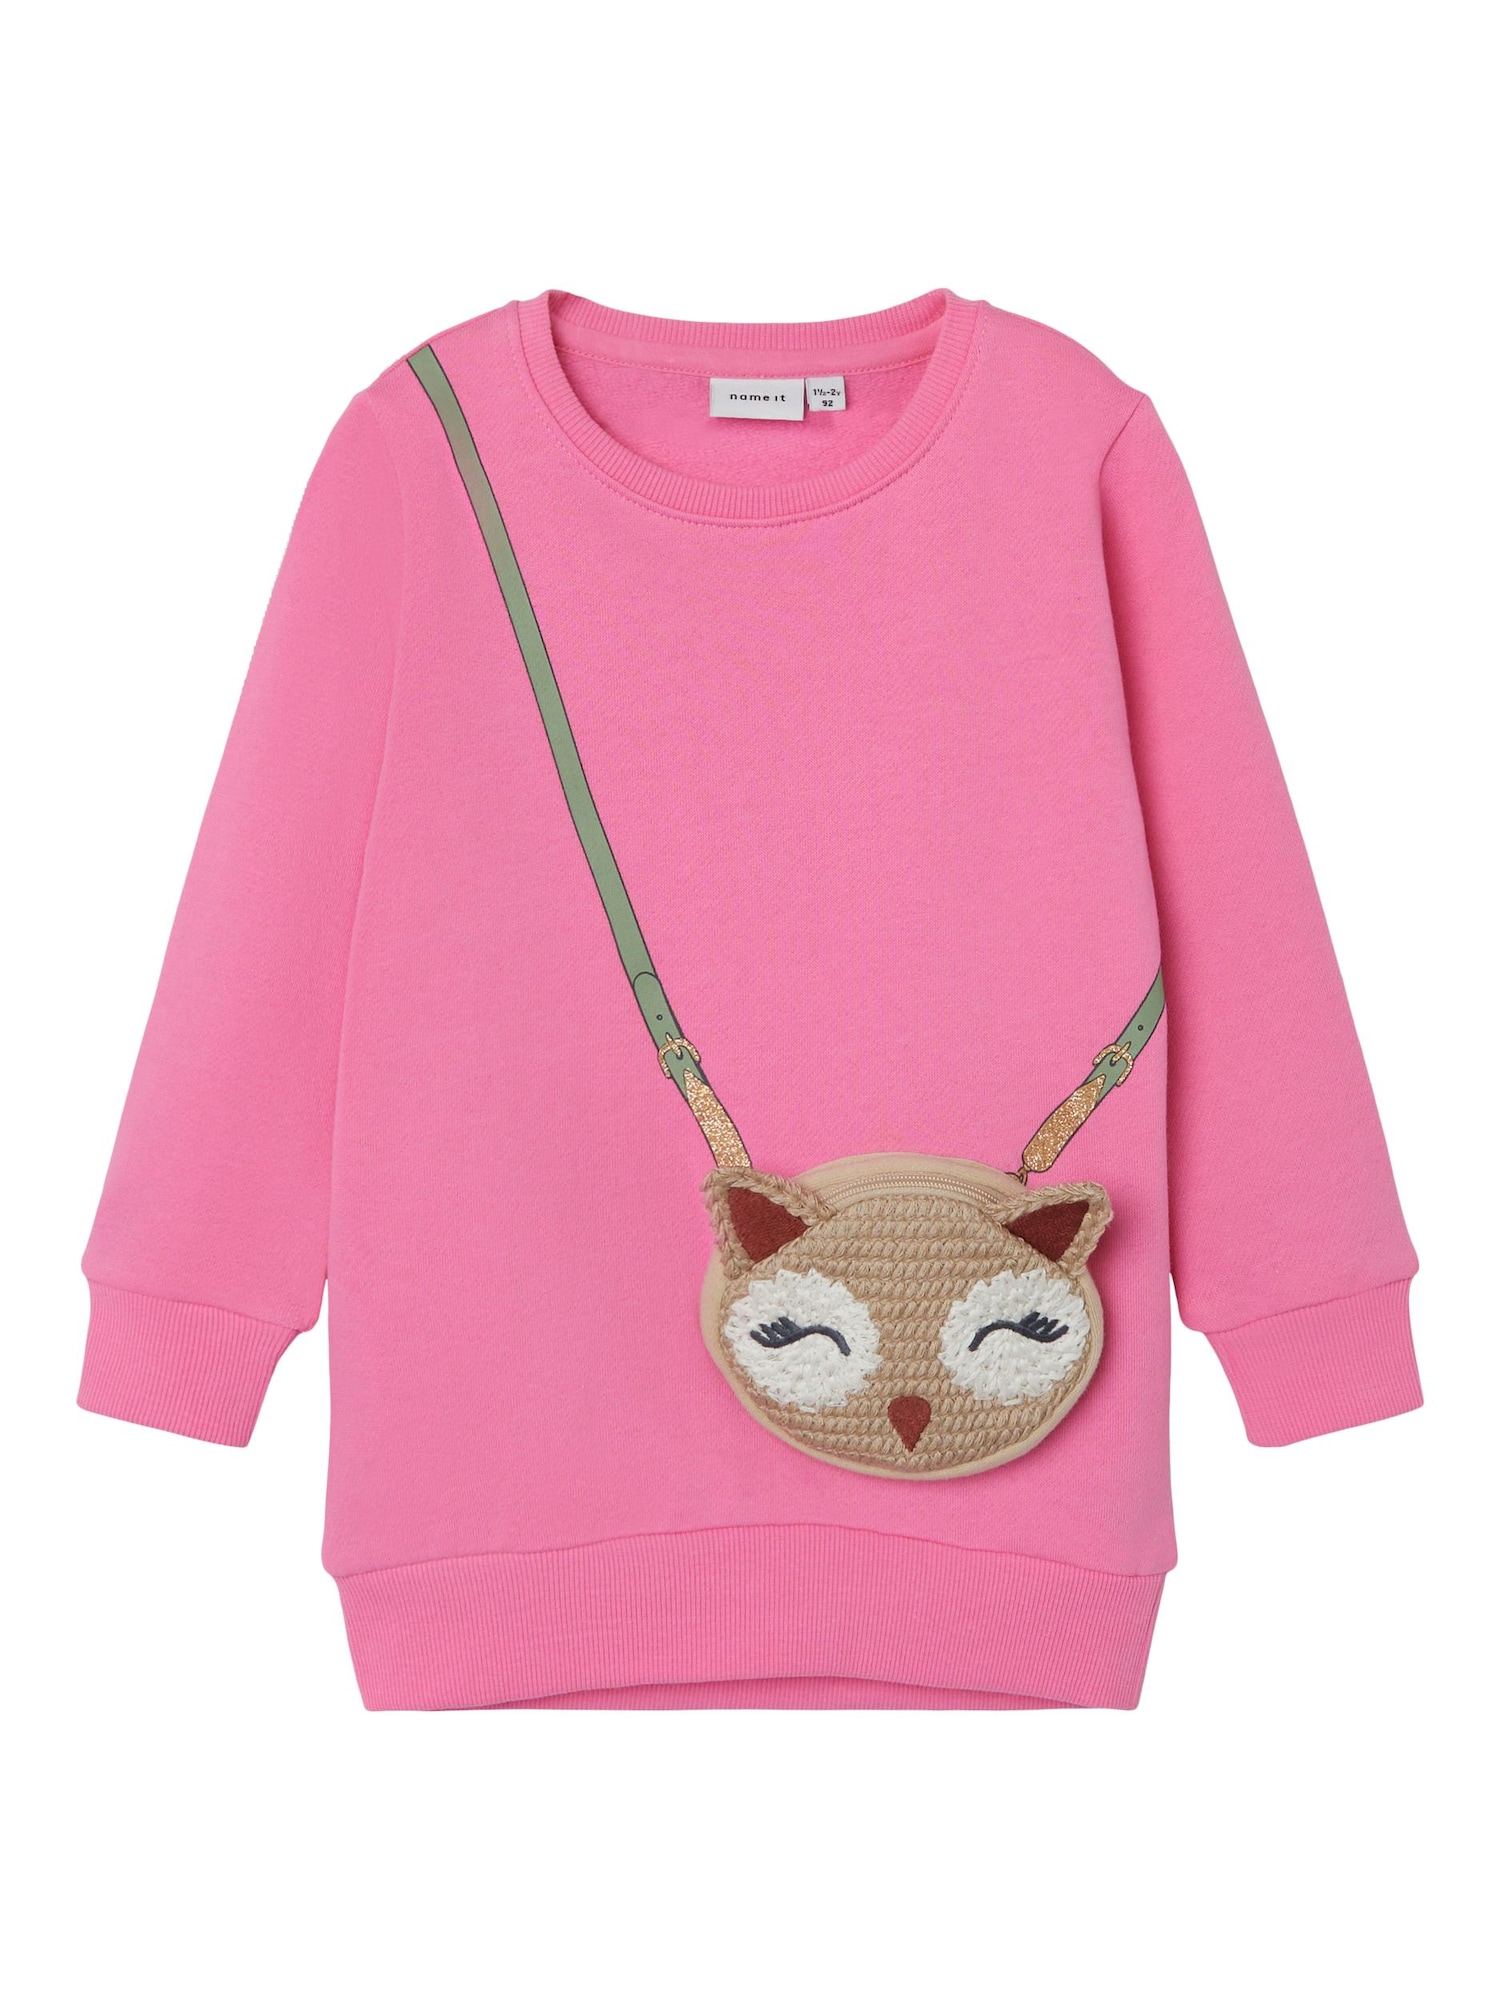 NAME IT Sweater majica 'OSINA'  kestenjasto smeđa / svijetlosmeđa / svijetloroza / bijela